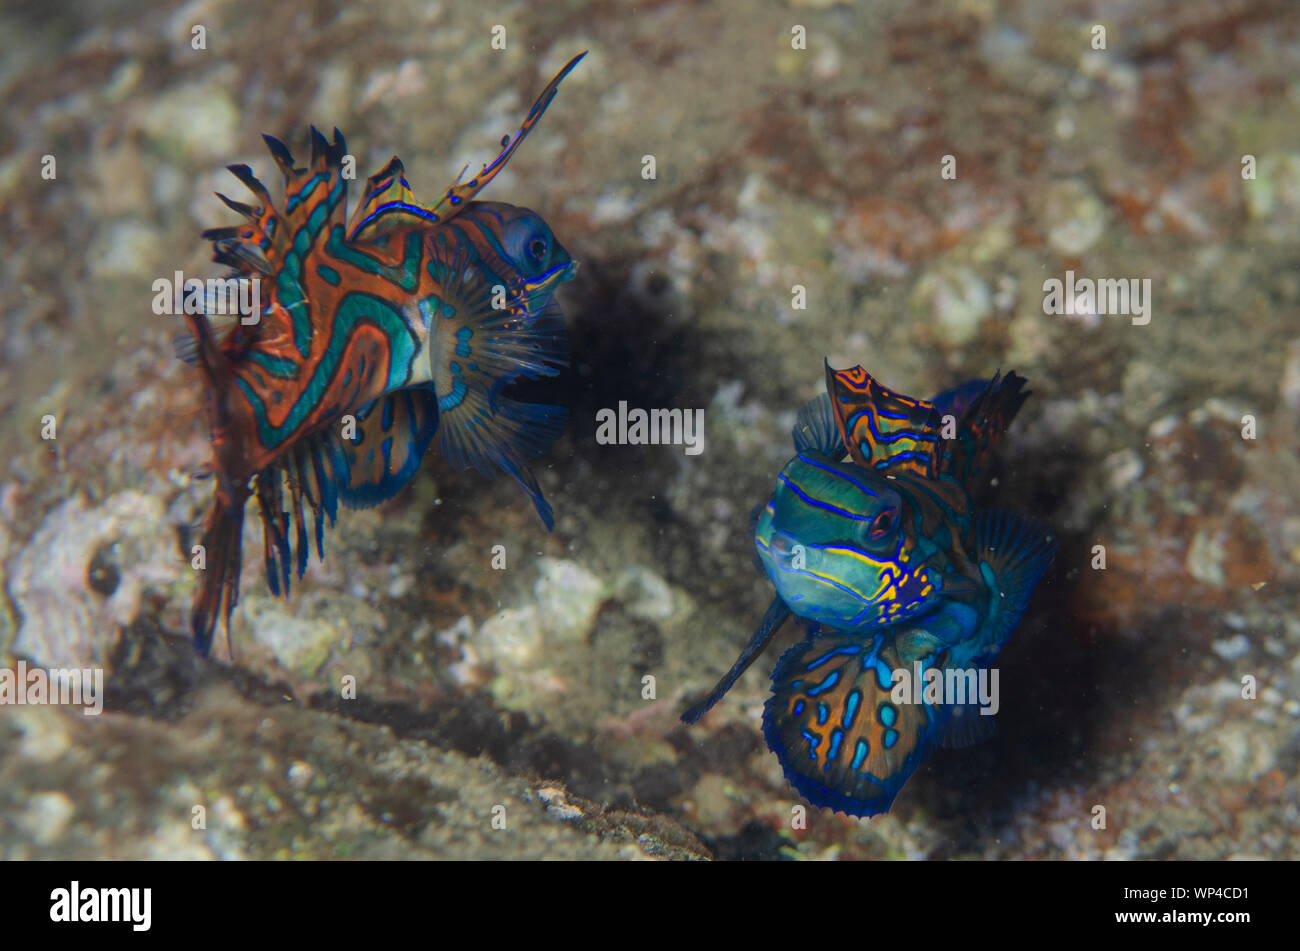 Mandarinfish, Synchiropus splendidus, pair fighting with ornate markings, Banda Neira Jetty dive site, night dive, Banda Islands, Maluku, Indonesia Stock Photo